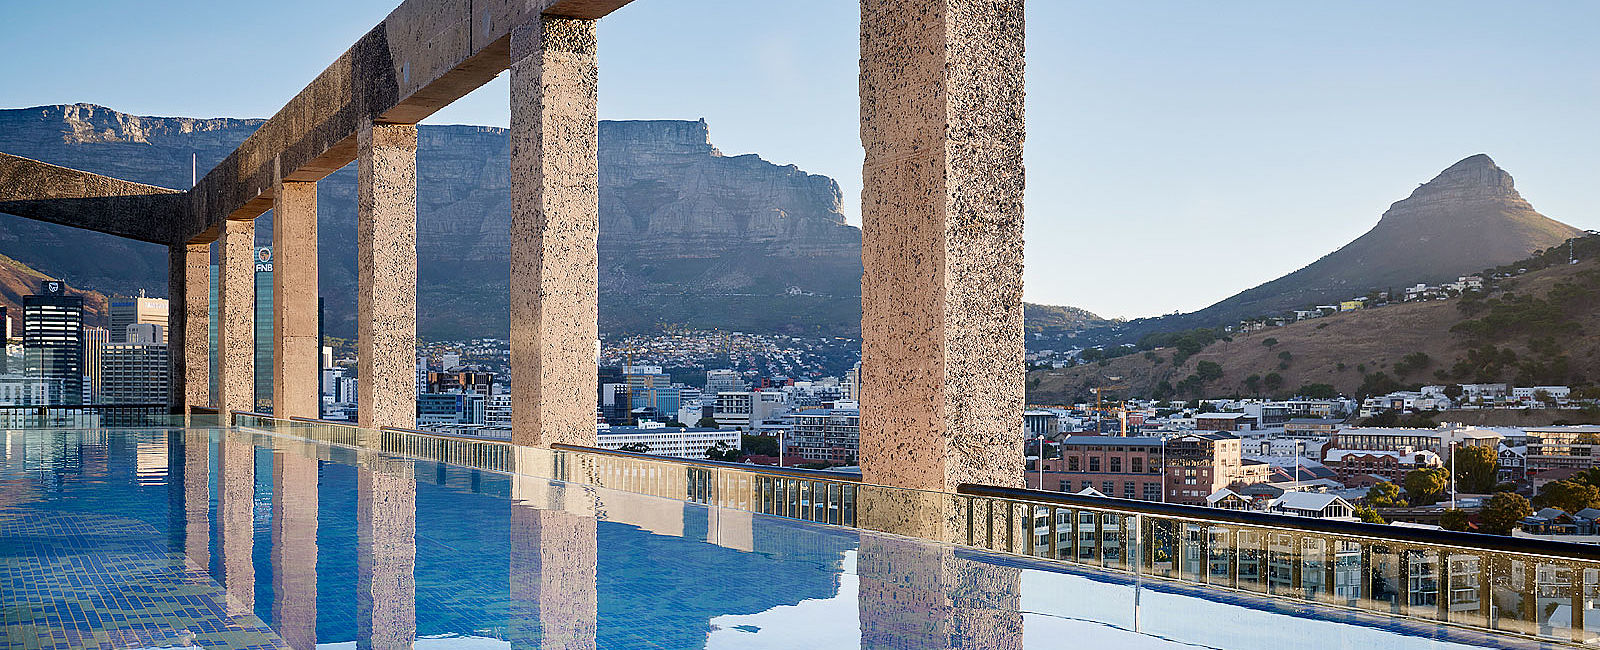 HOTEL TIPPS
 The Silo Hotel 
 Ein neuer Luxustandard für Kapstadt 